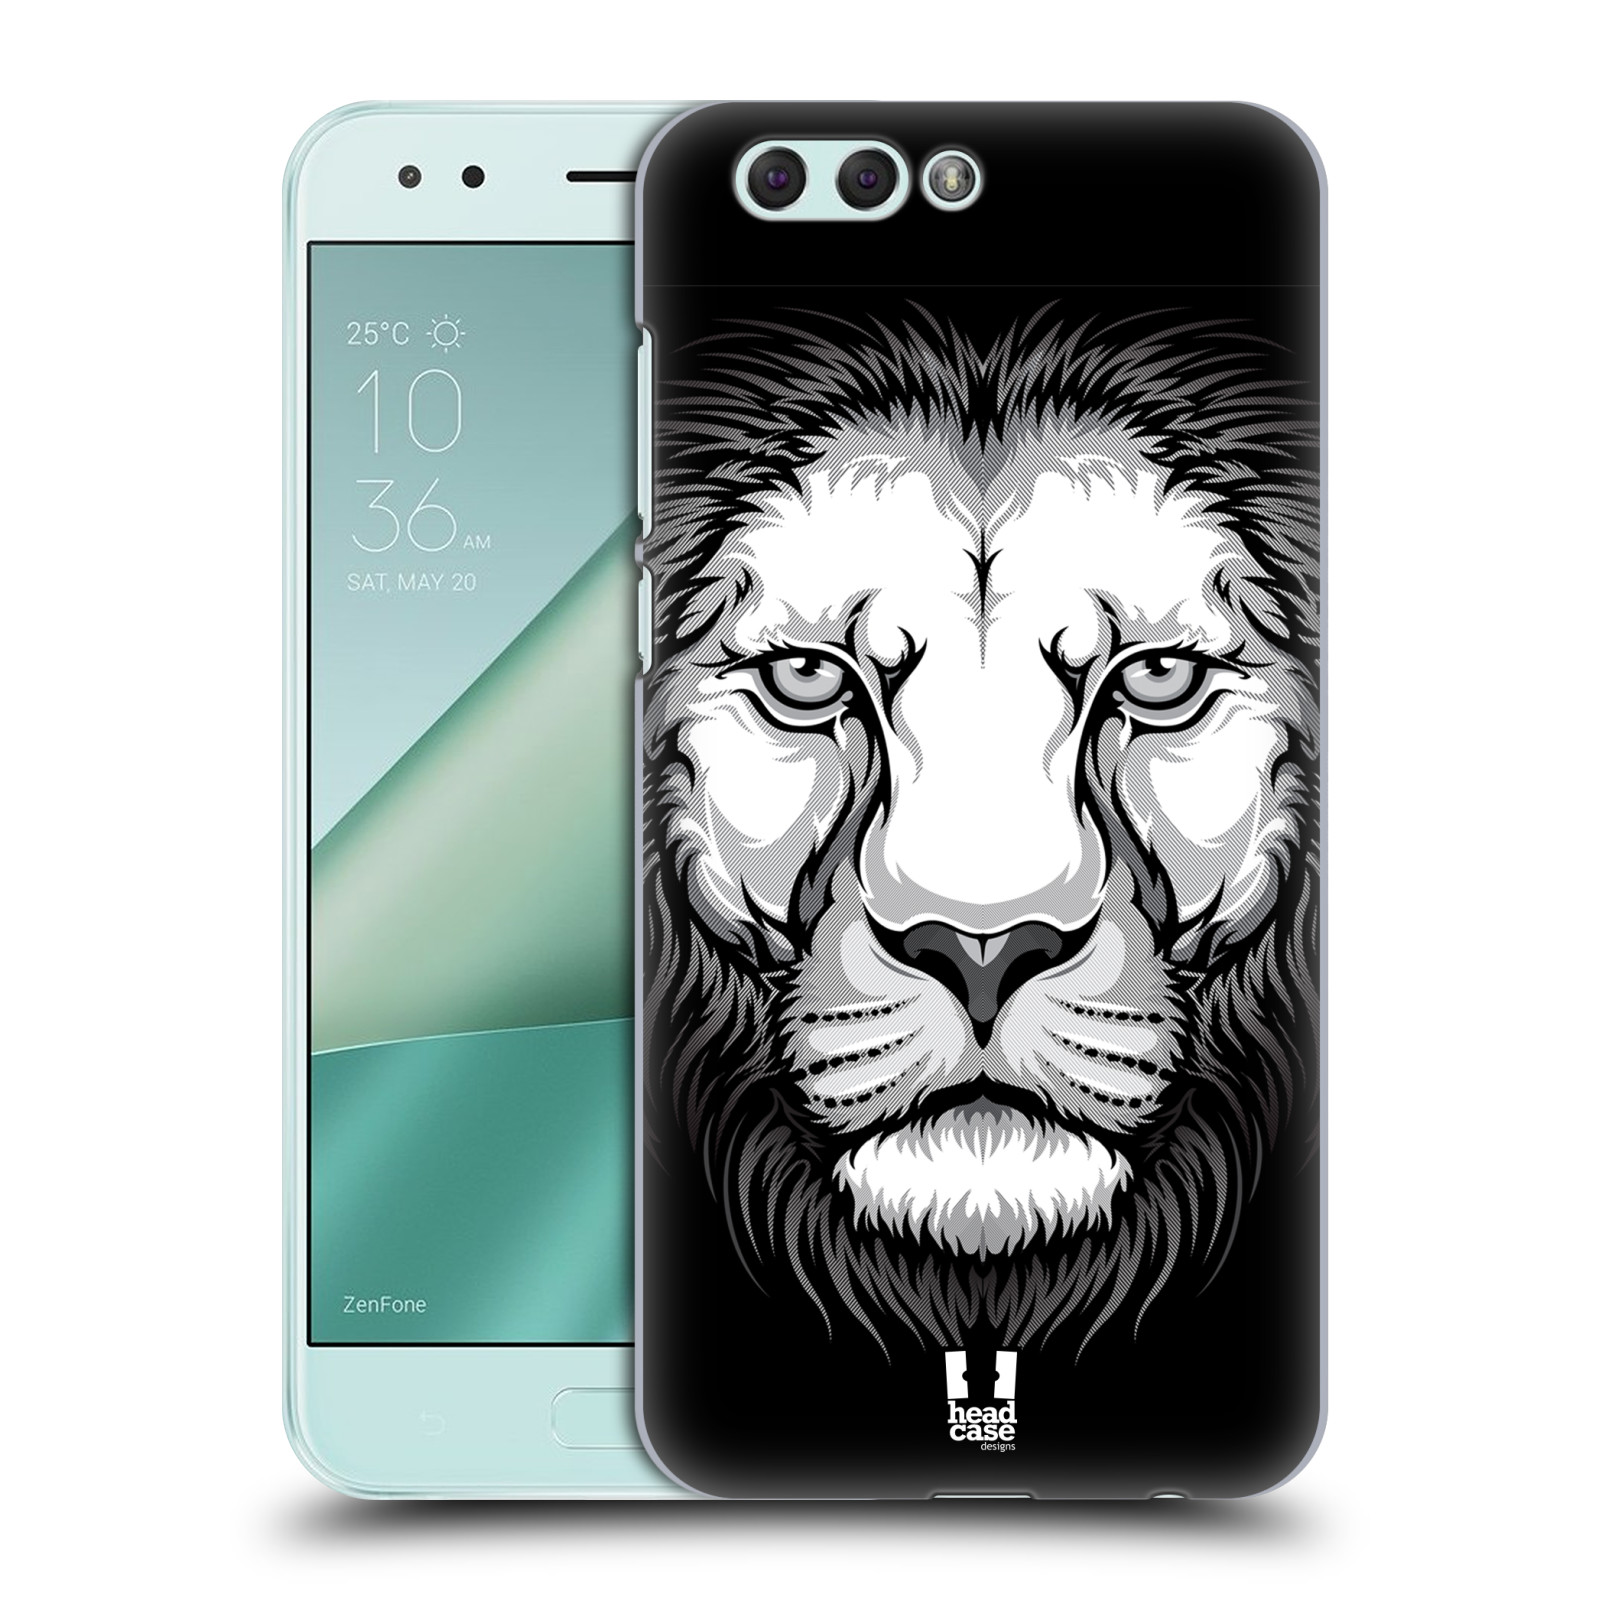 HEAD CASE plastový obal na mobil Asus Zenfone 4 ZE554KL vzor Zvíře kreslená tvář lev